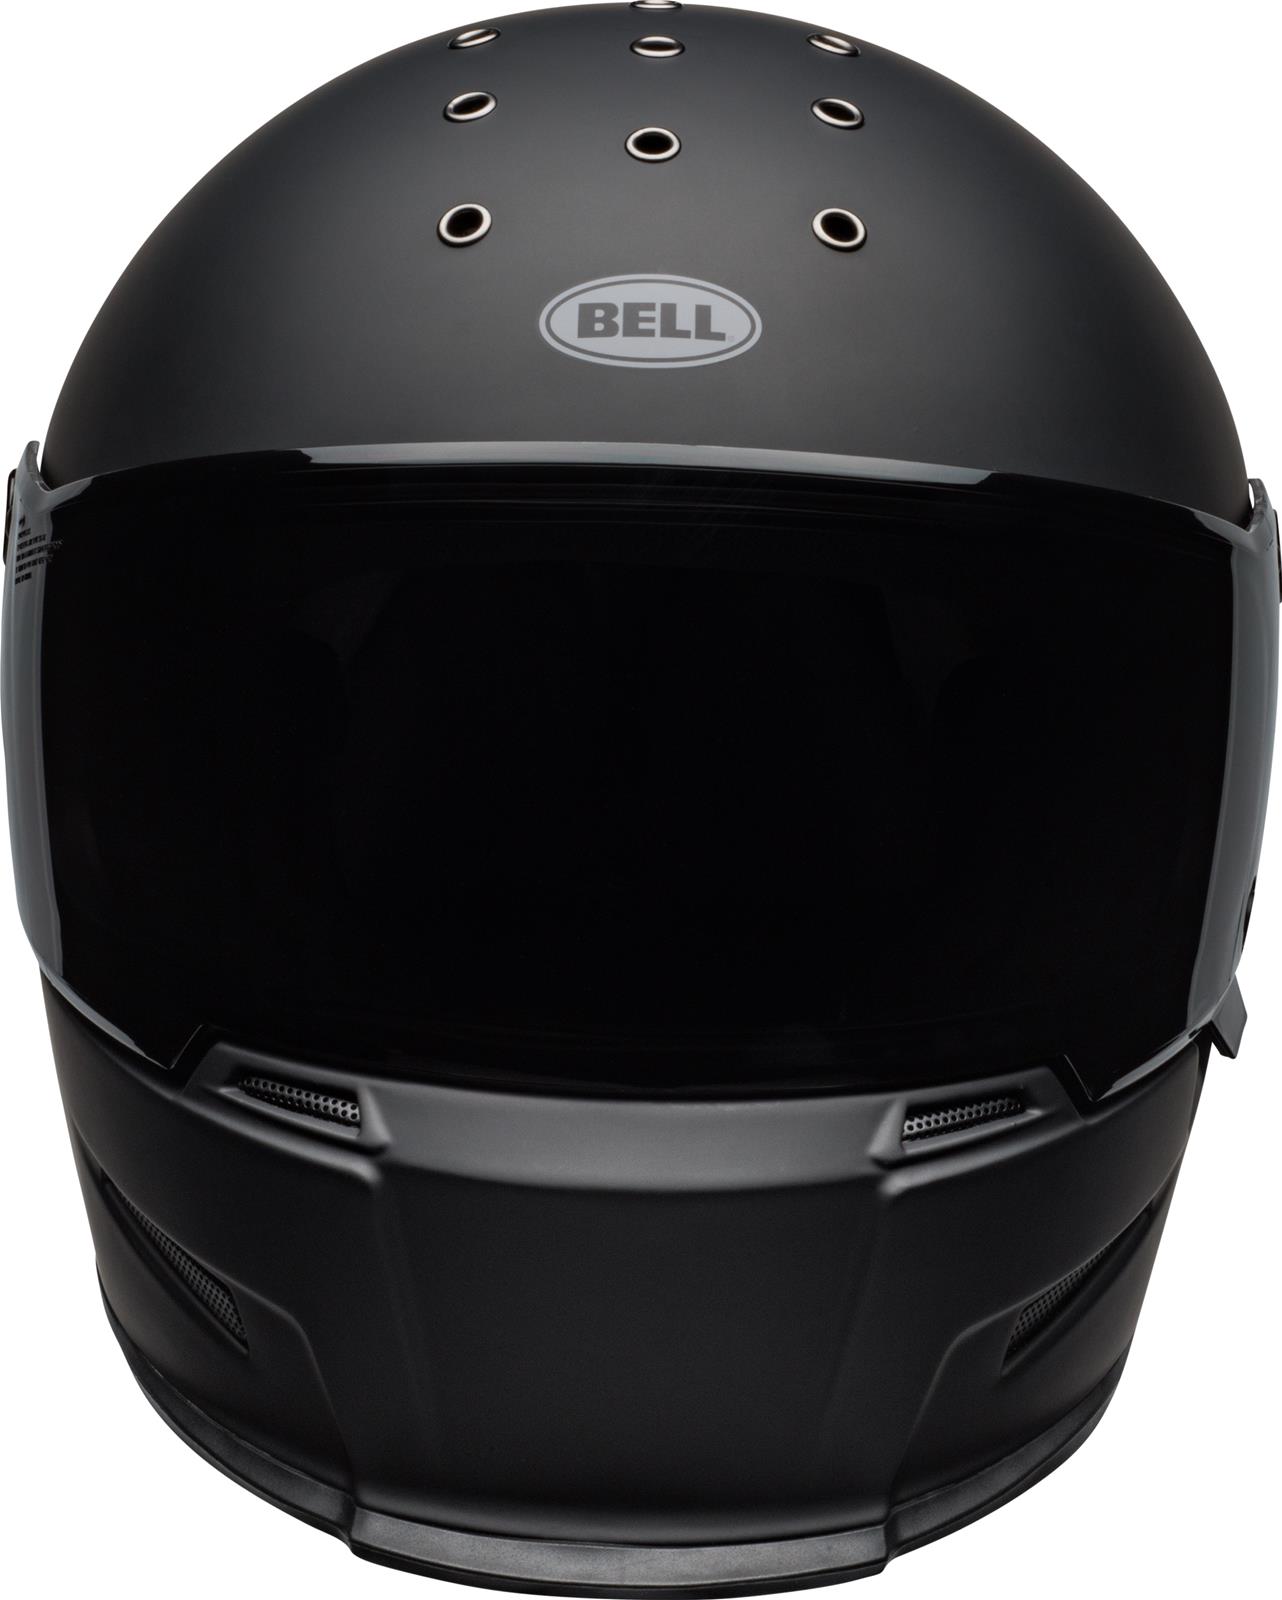 Bell Motorcycle Helmets 7100627 Bell Eliminator Helmets | Summit Racing